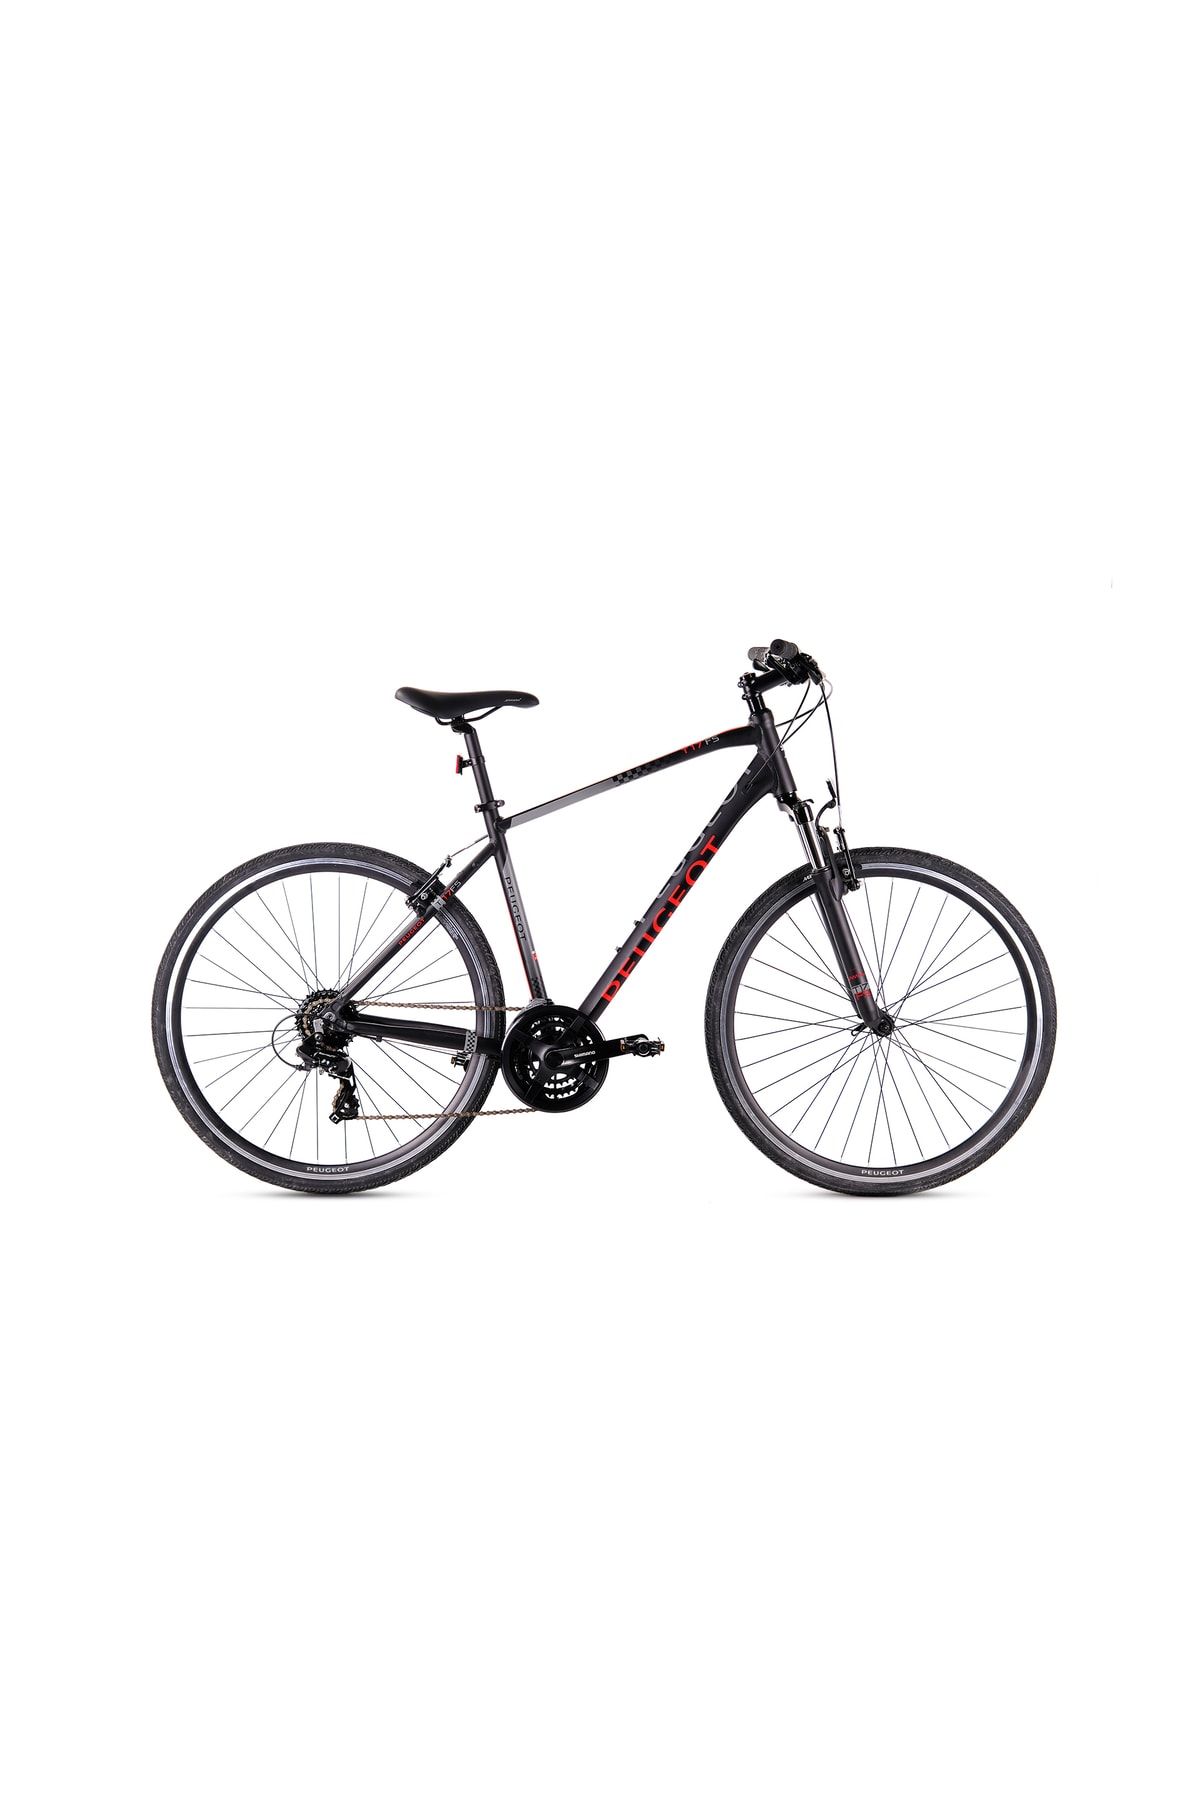 Peugeot Bisiklet T17-fs 470h 28" 24-v Vb Siyah-kırmızı Trekking Bisikleti